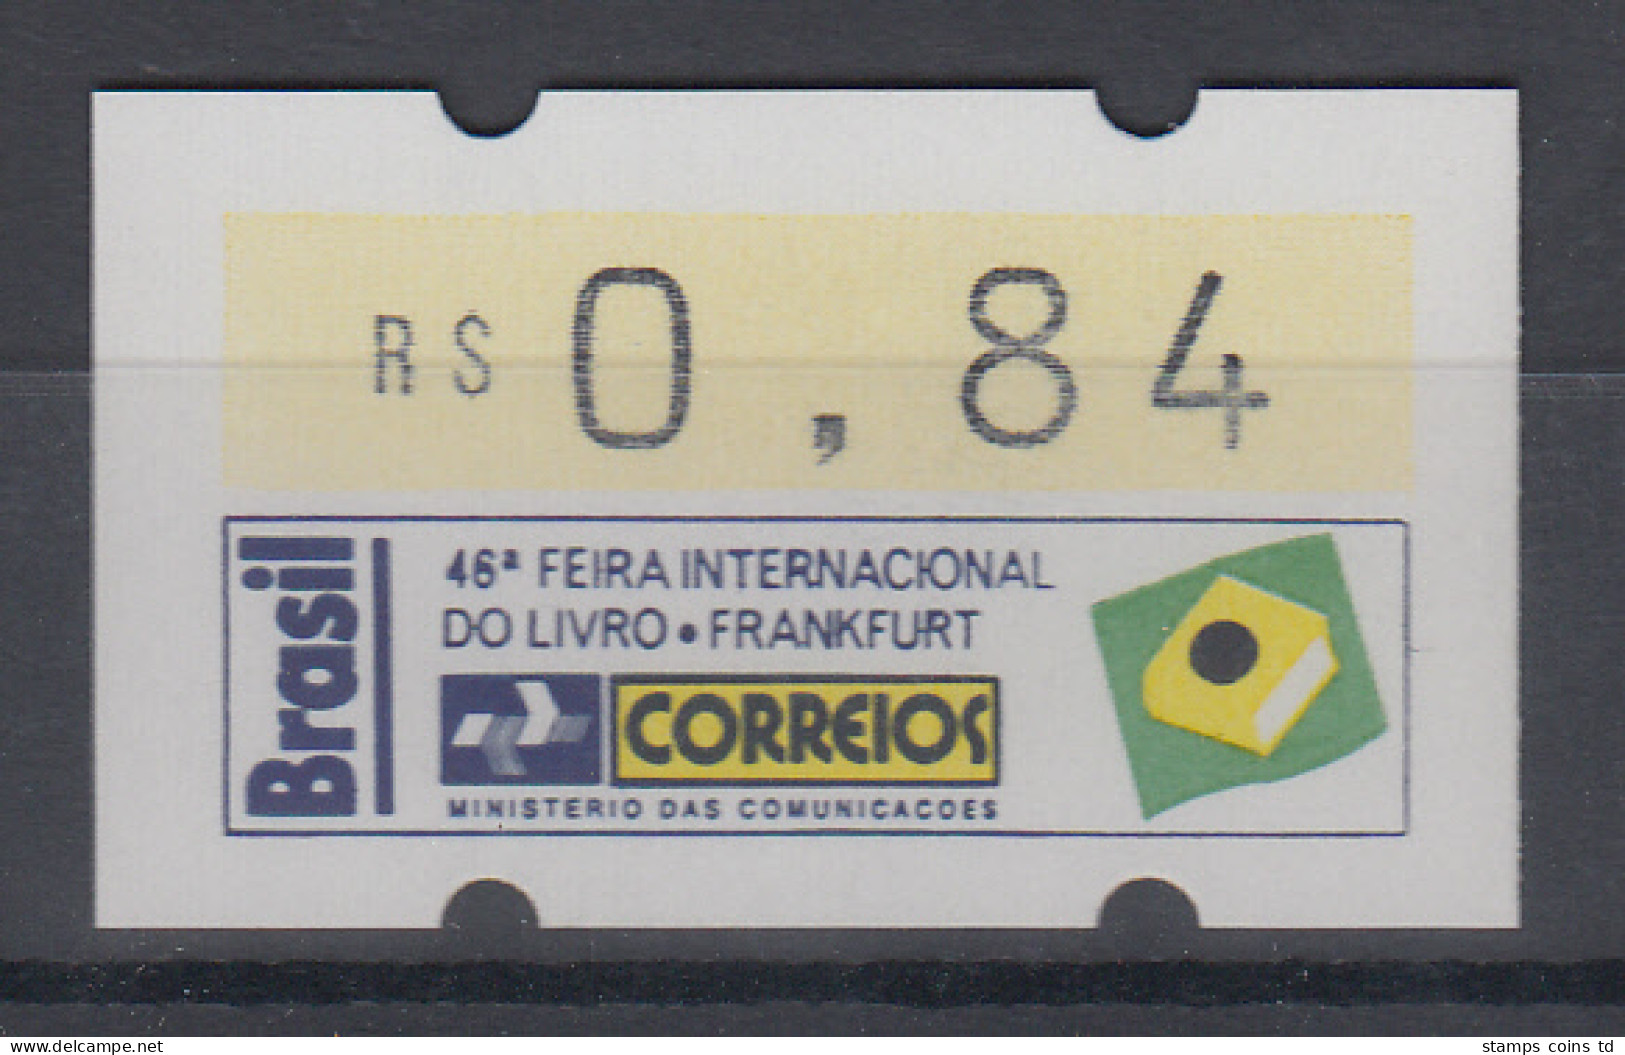 Brasilien Klüssendorf-ATM Sonderausgabe Buchmesse Frankfurt 1994 ** - Franking Labels